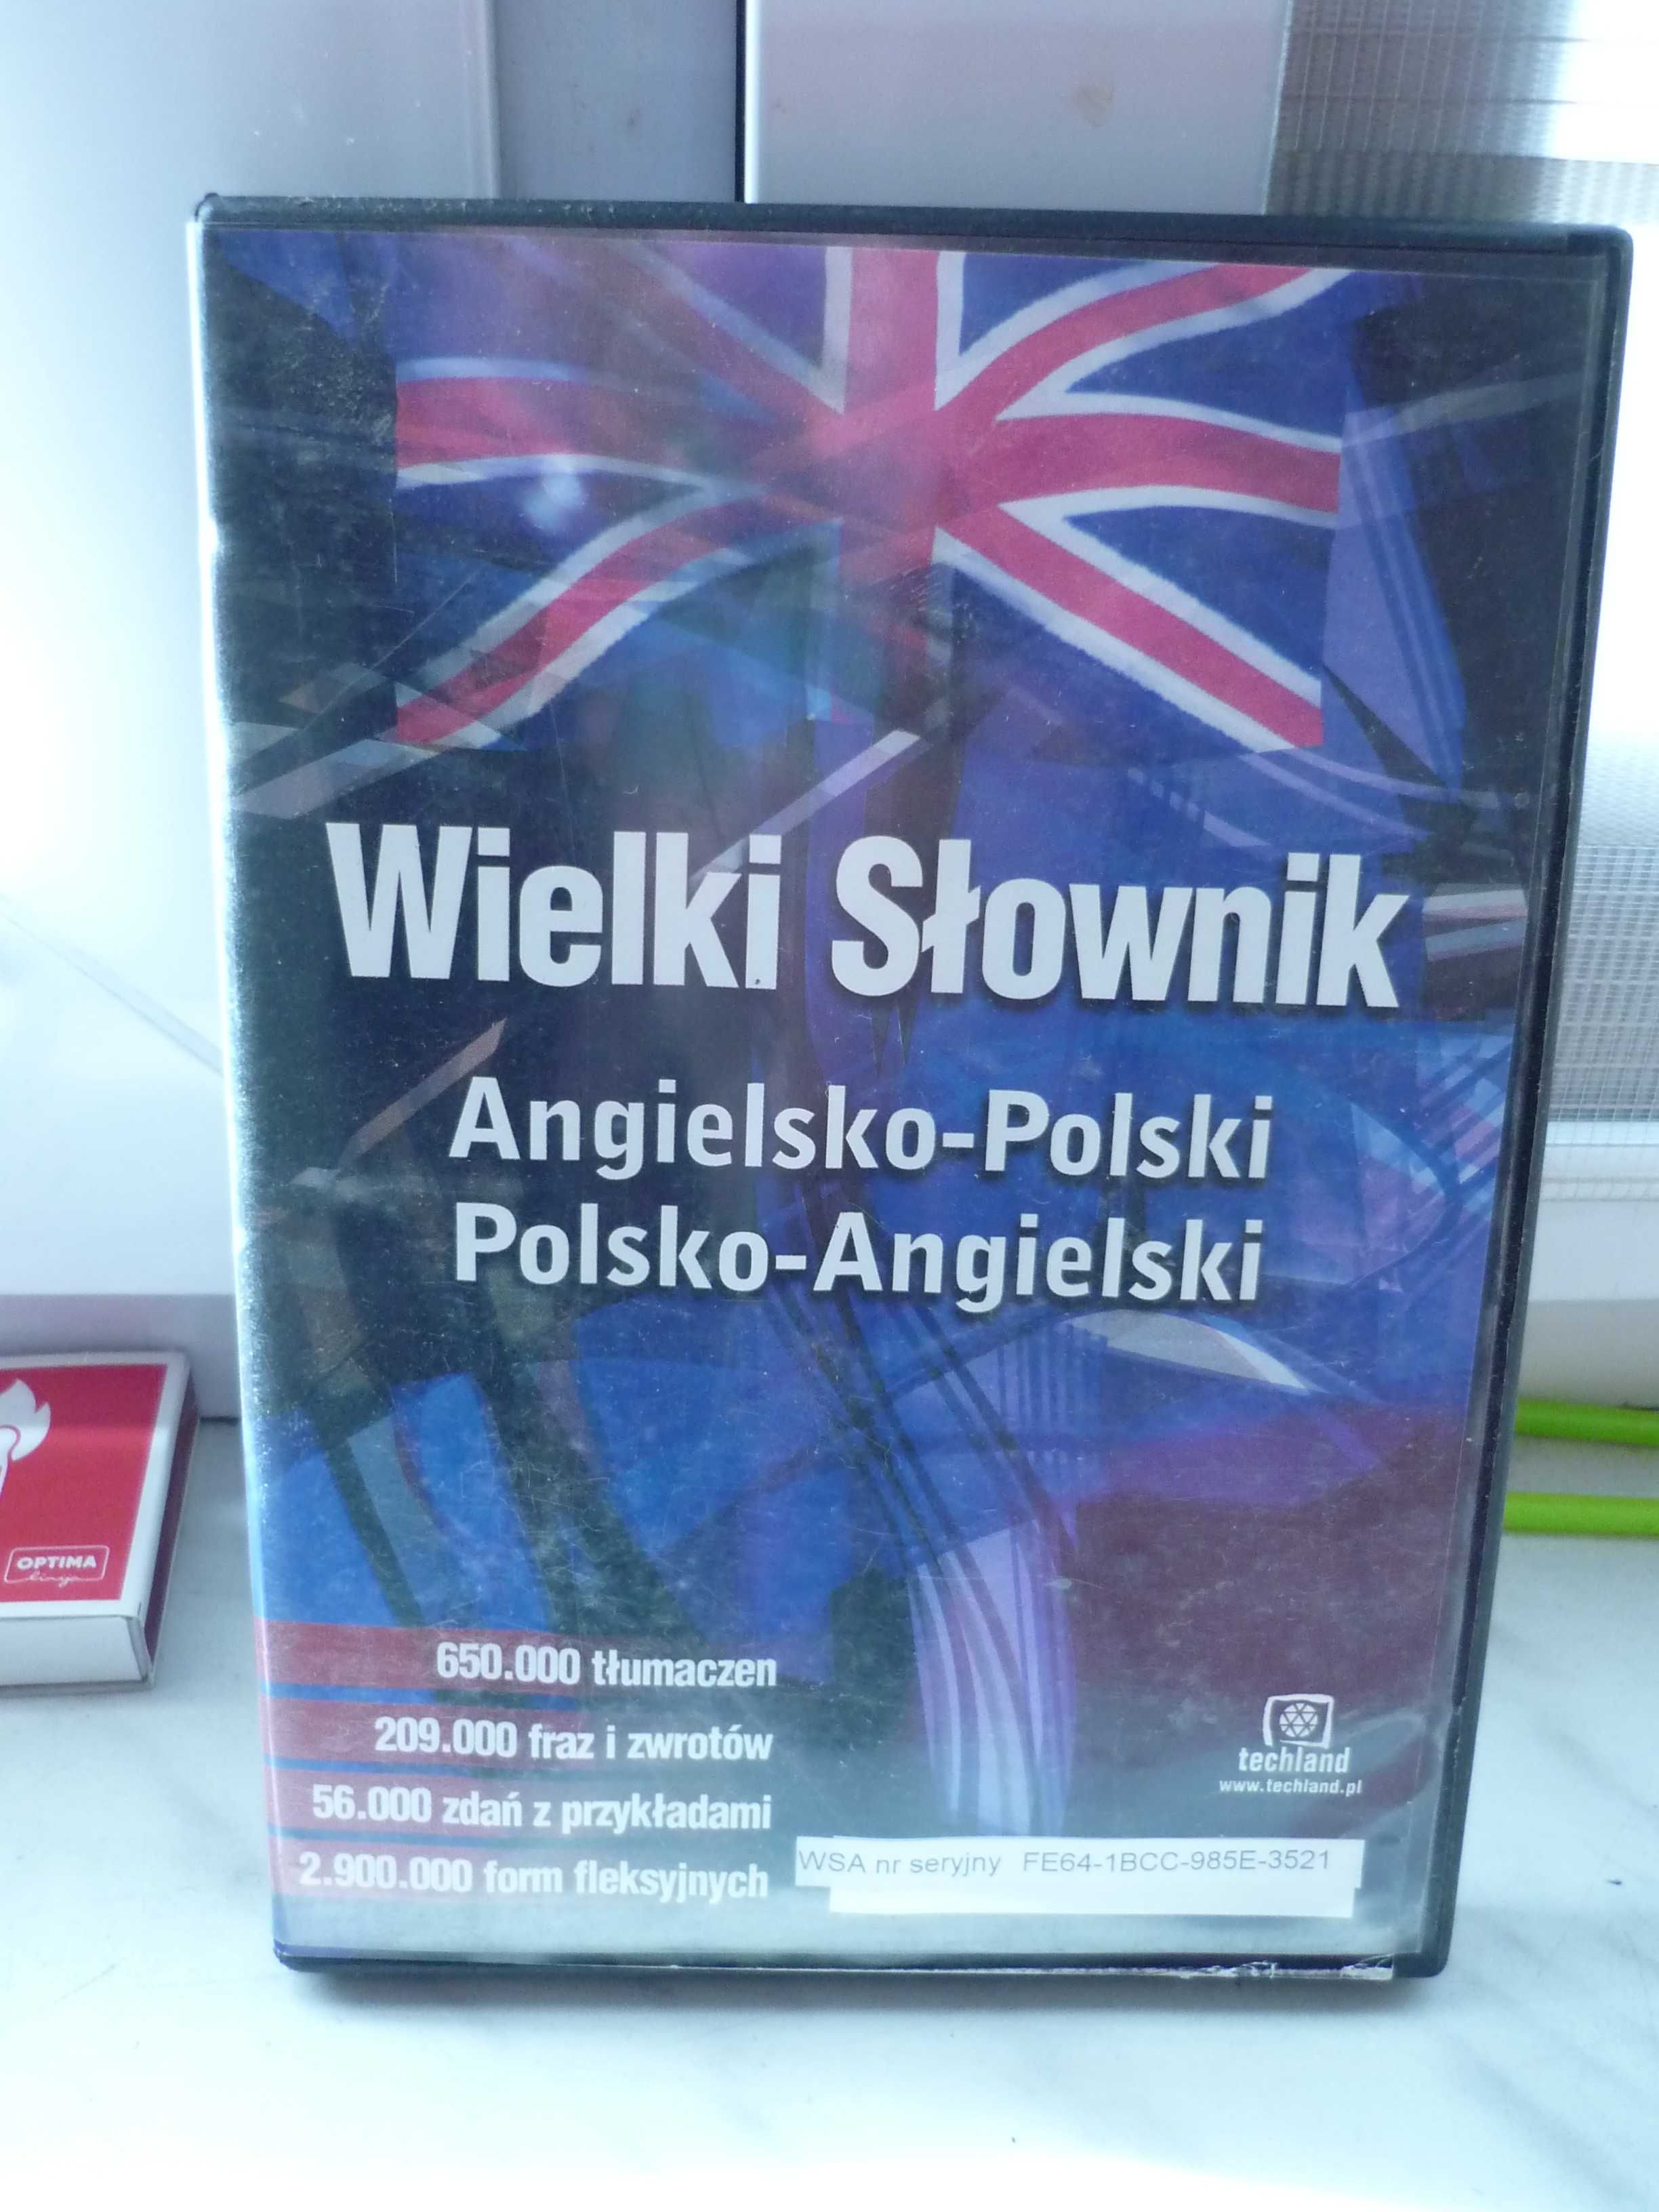 Wielki słownik Angielsko-Polski , Polsko-Angielski , CD-ROM.